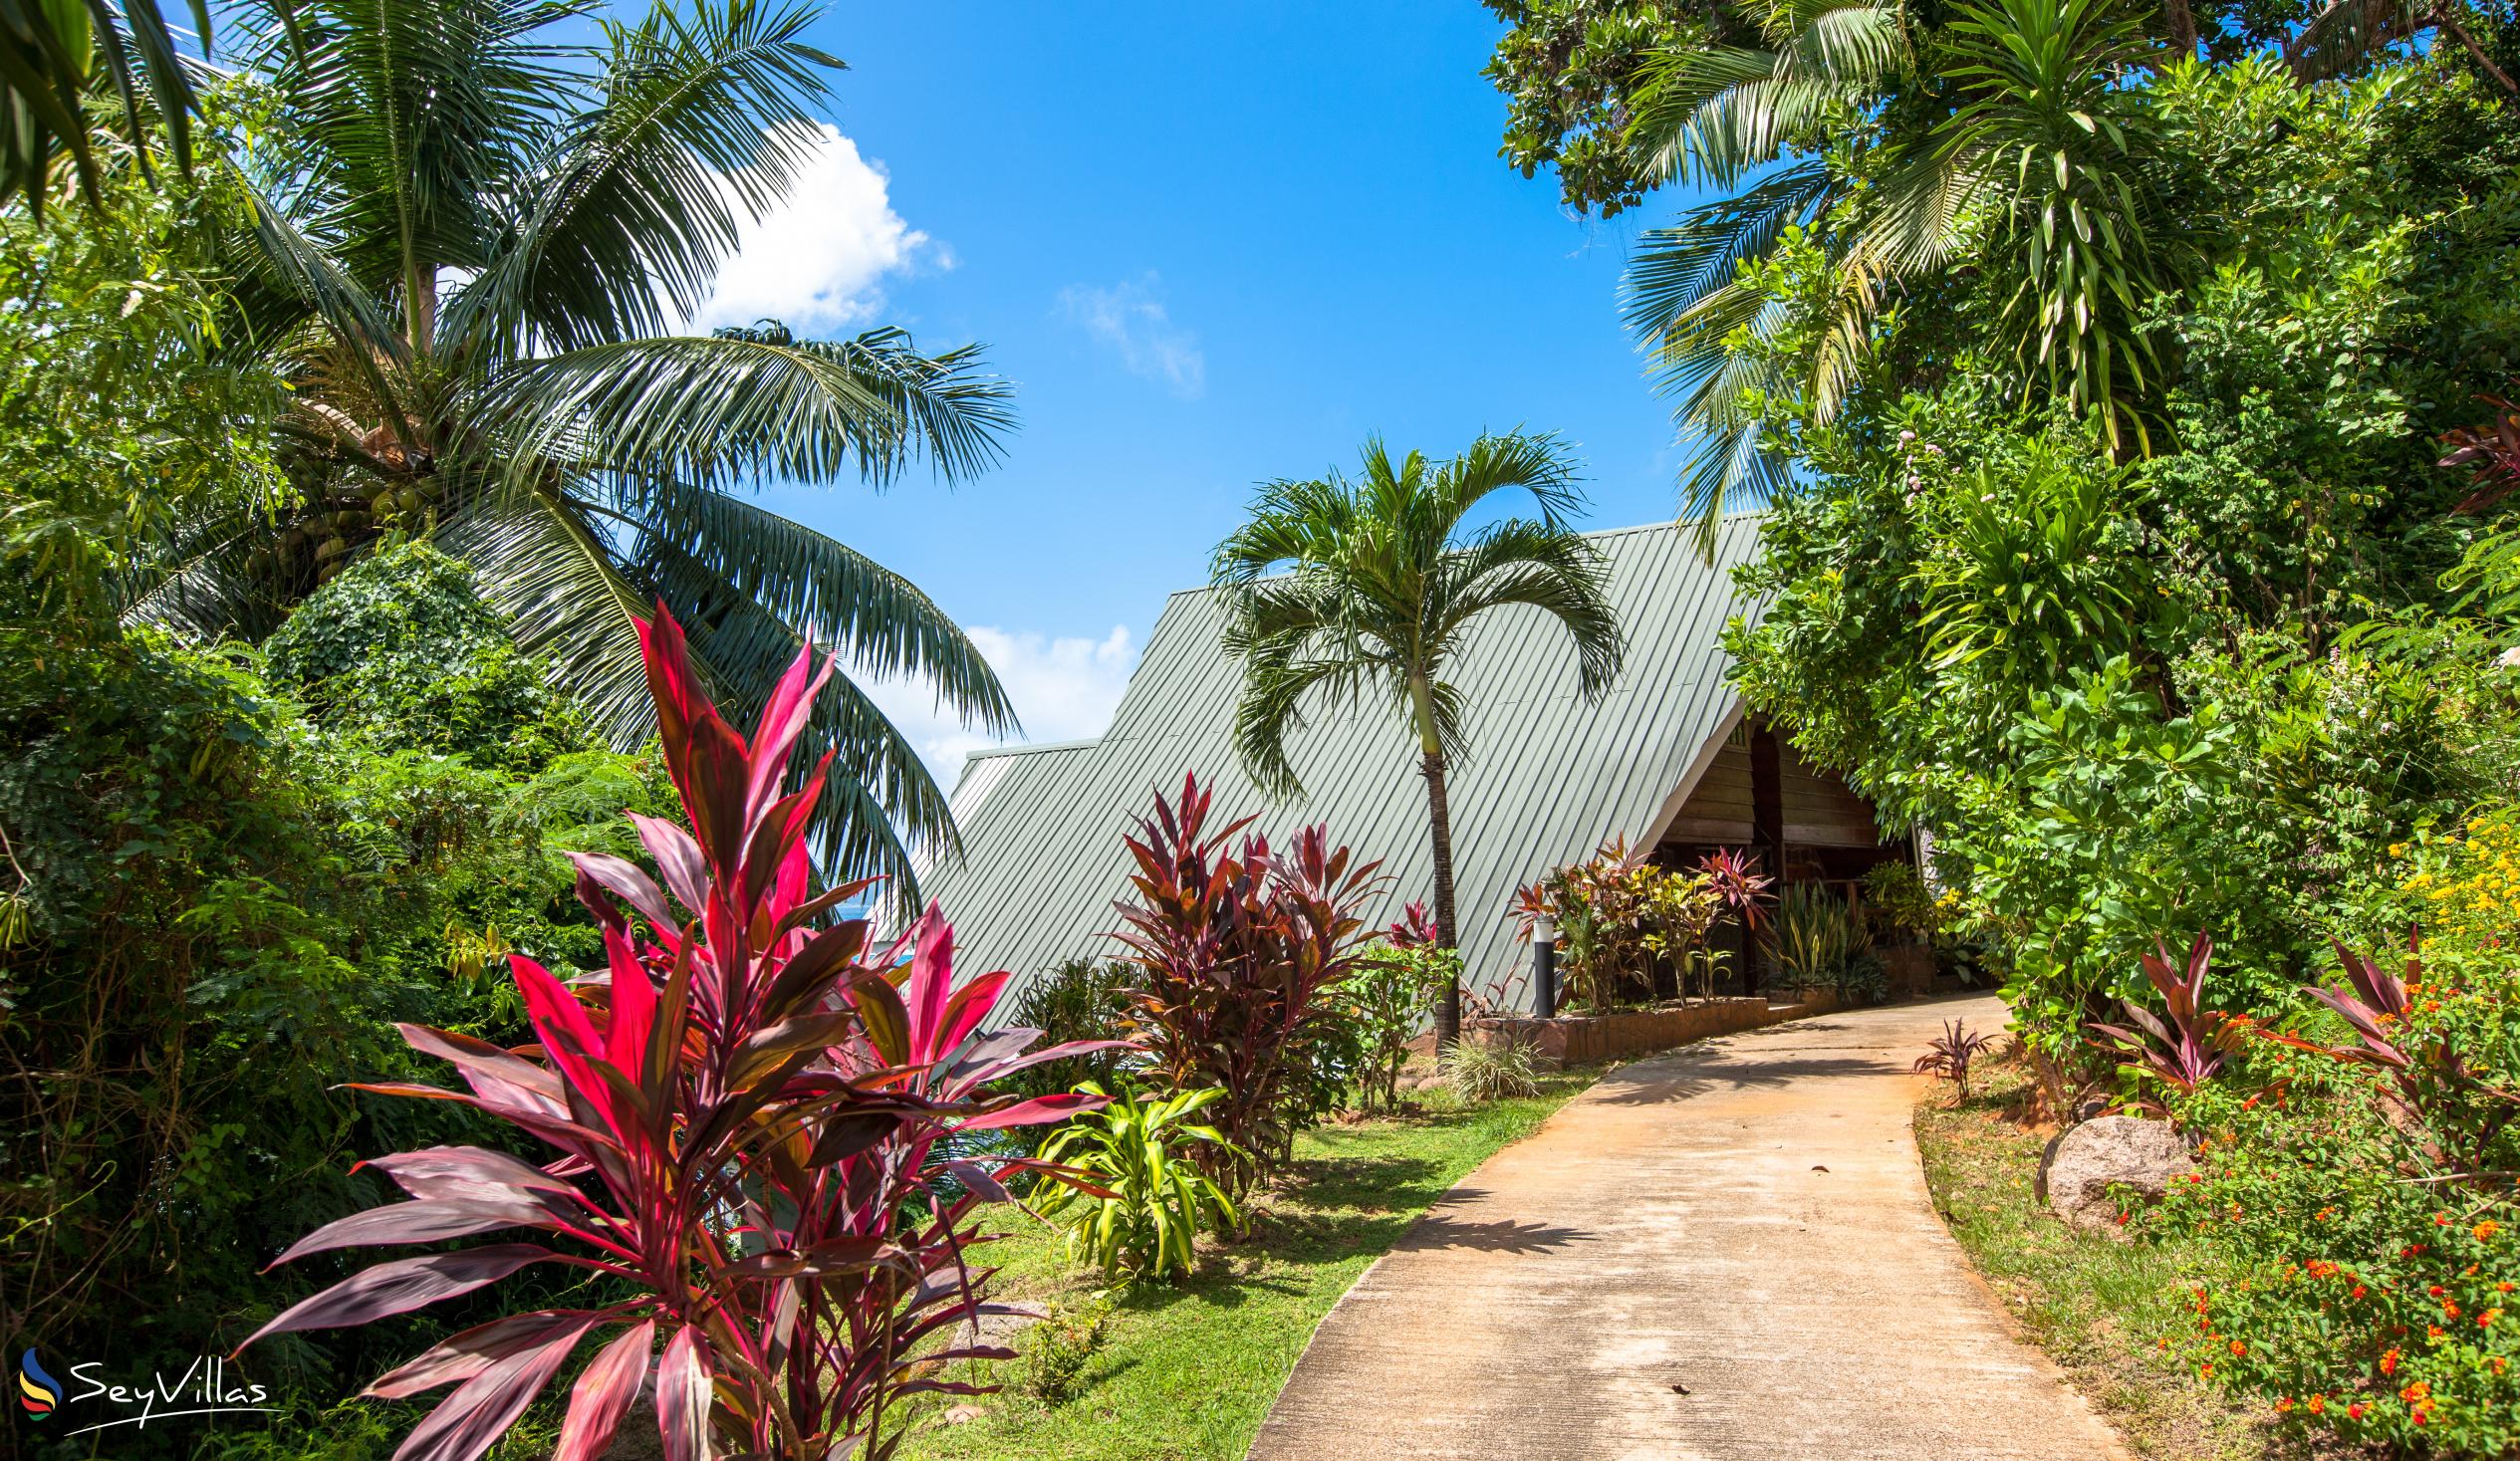 Foto 15: Colibri Guesthouse - Aussenbereich - Praslin (Seychellen)